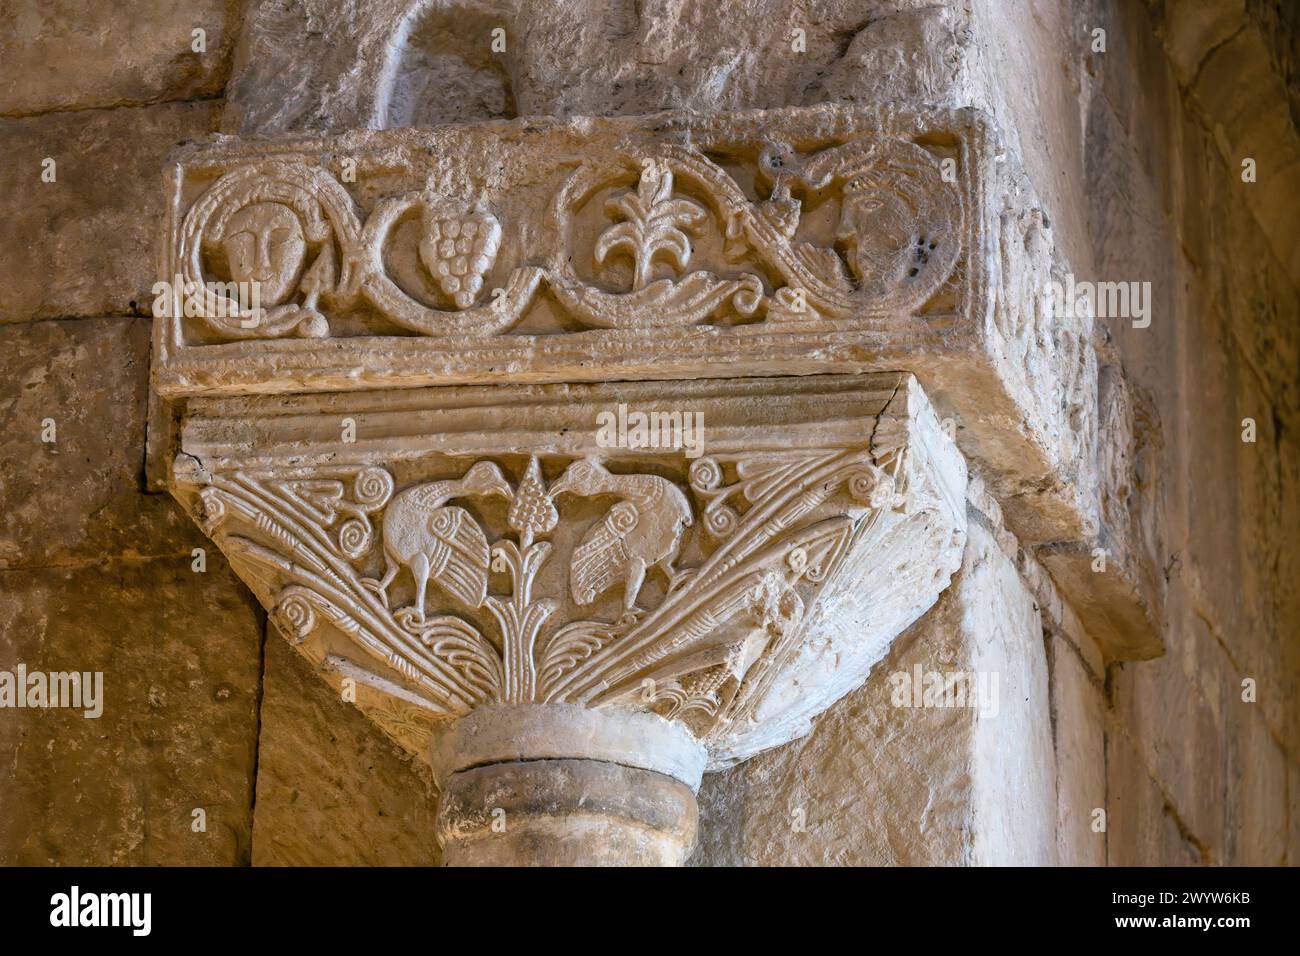 Près de l'autel, les deux colonnes en regard présentent des oiseaux élégants, représentant l'âme au paradis. Église wisigothique de San Pedro de la Nave. Le St. Banque D'Images